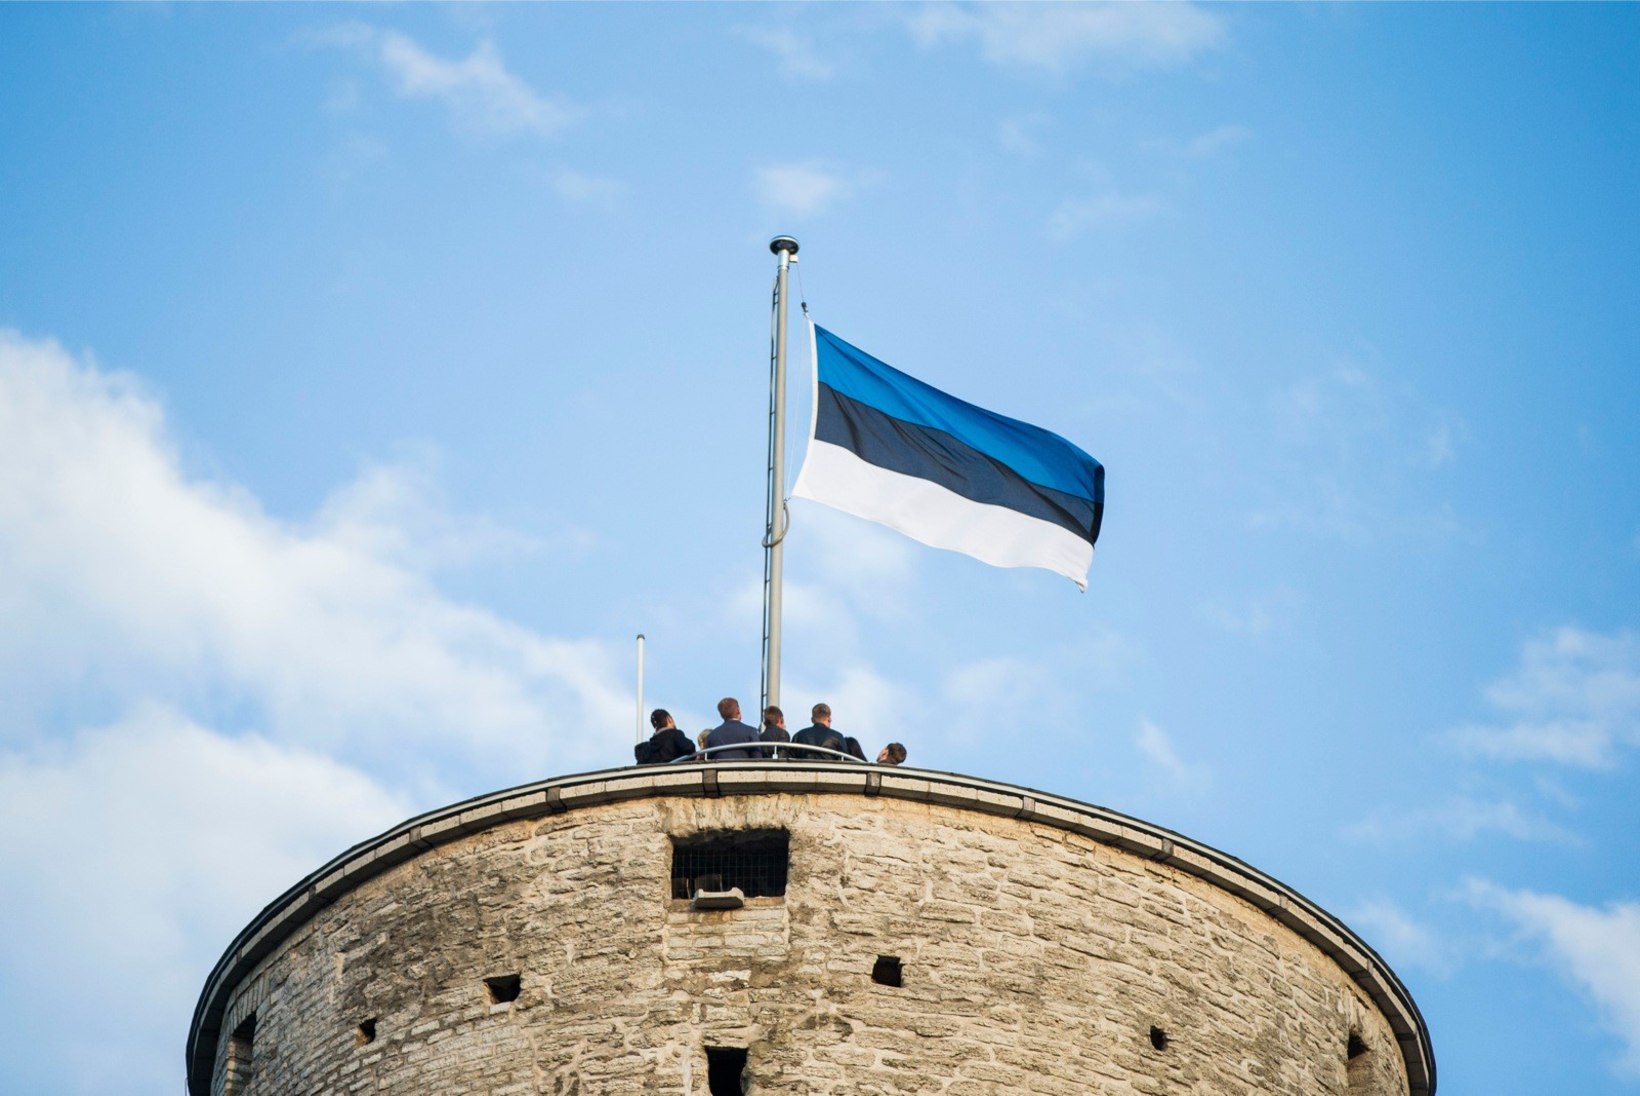 Kuidas tähistada vabariigi aastapäeva? | Vitali Belobrovtsev | Tuleb töine aastapäev